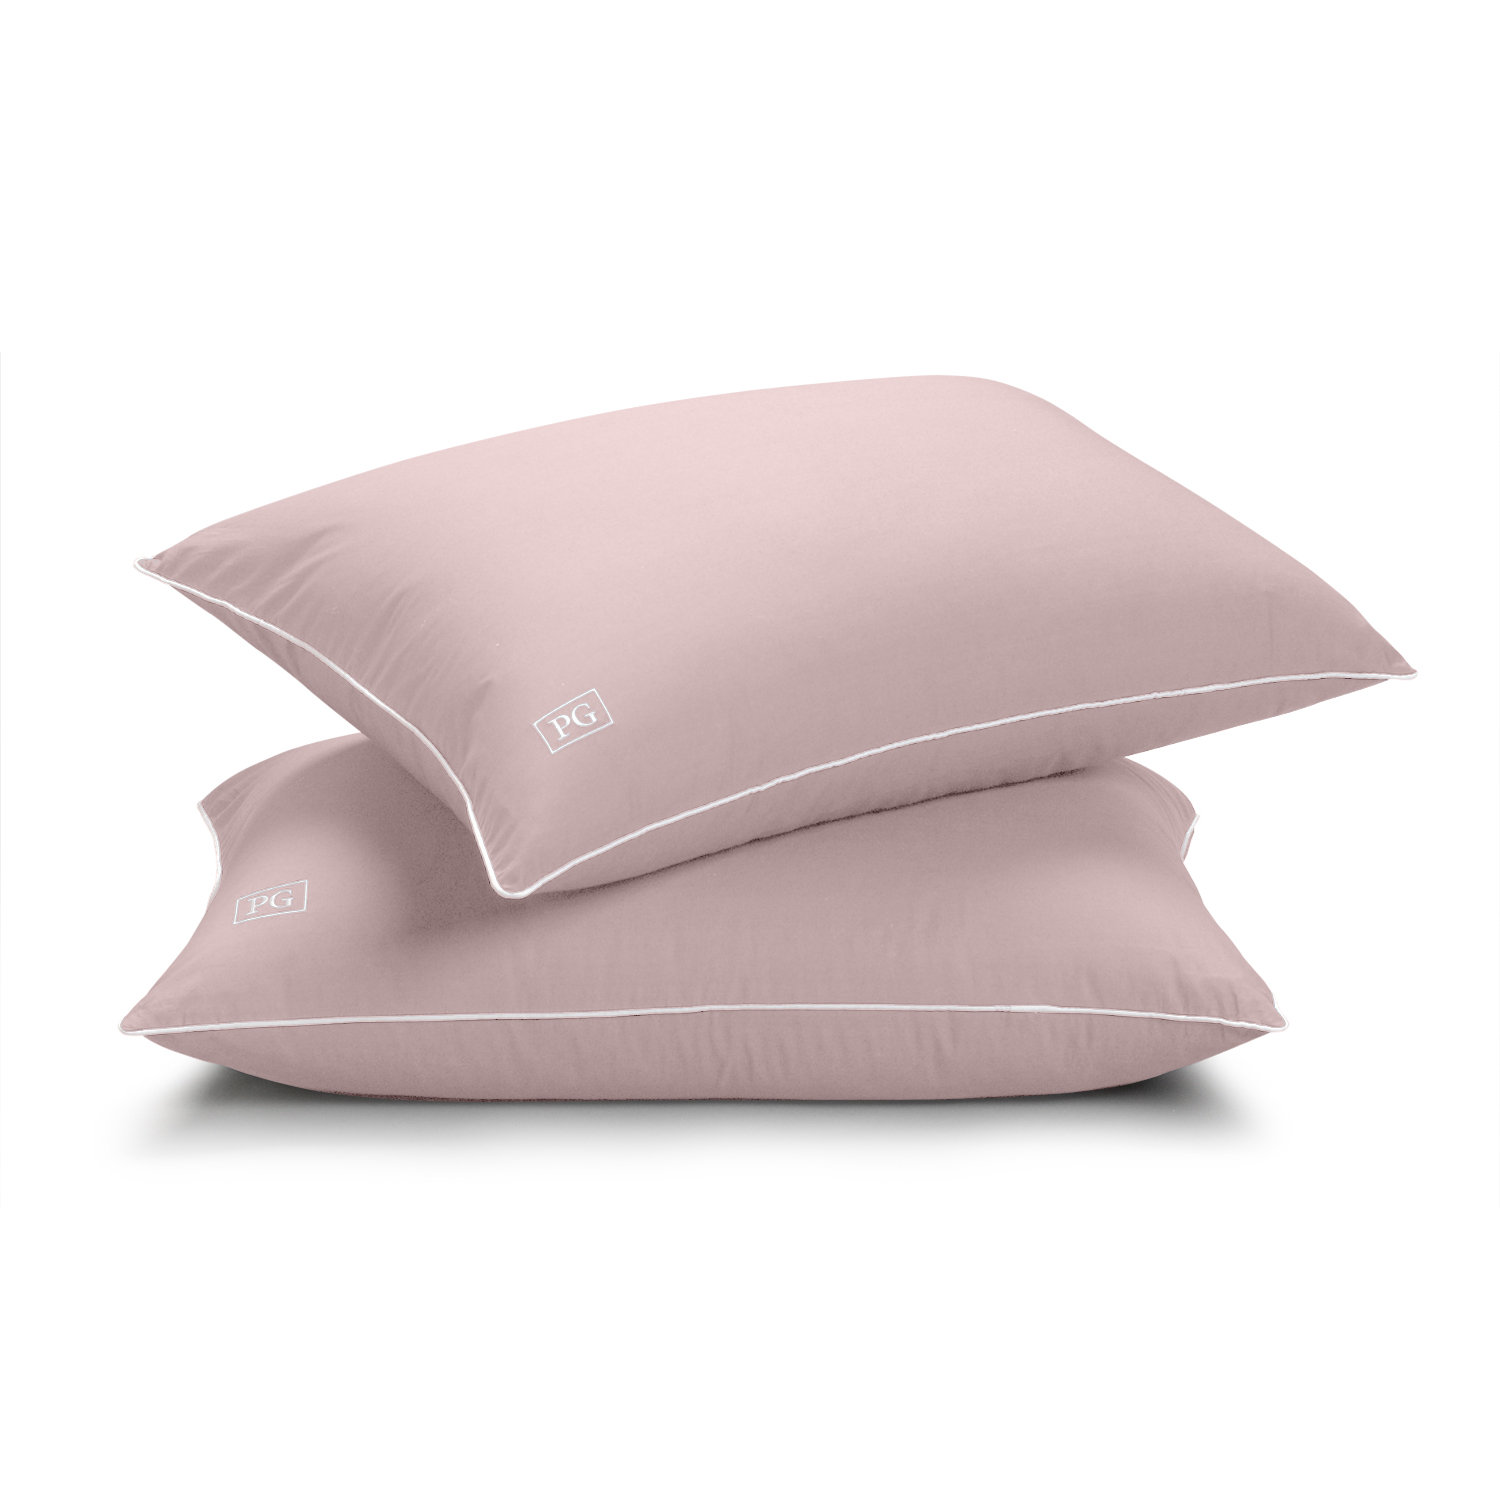 https://assets.wfcdn.com/im/36121326/compr-r85/2099/209906244/pillow-gal-2-pack-down-alternative-firm-overstuffed-pillow.jpg